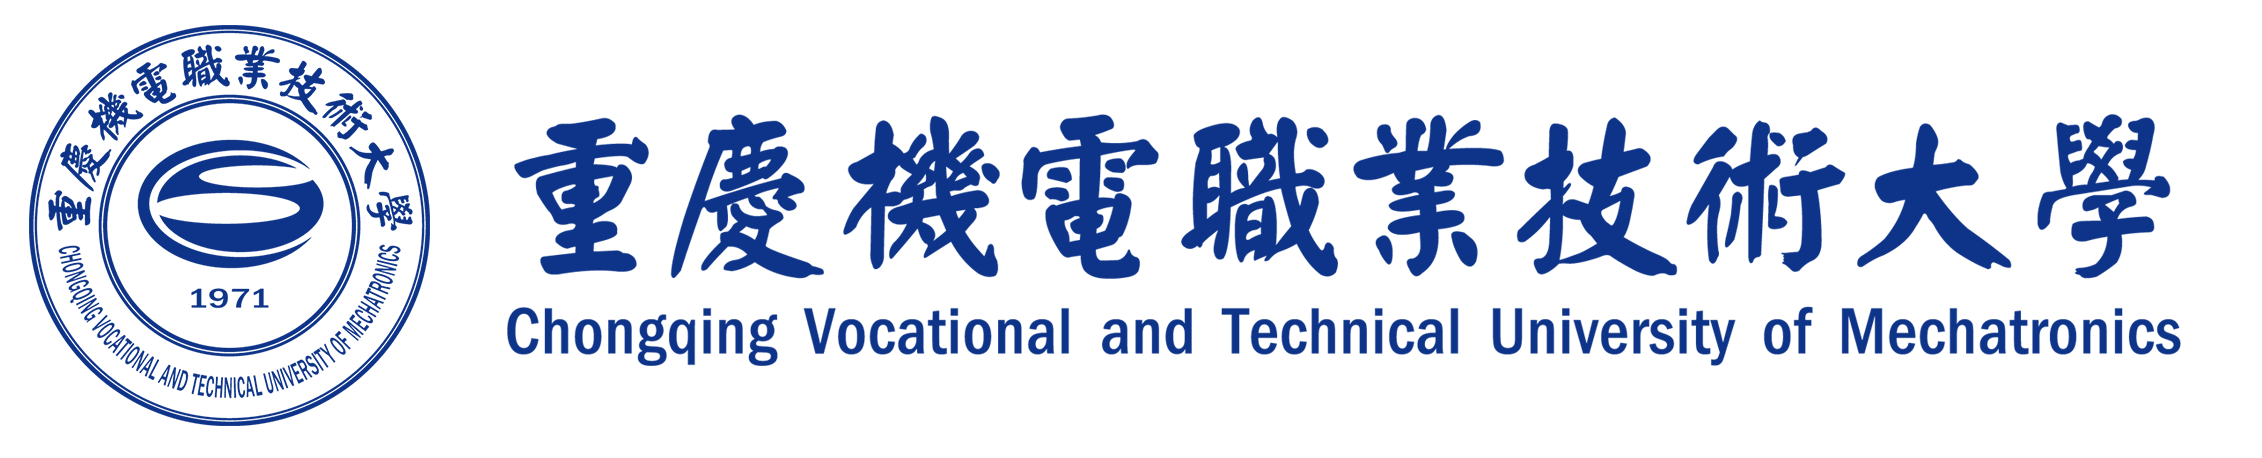 工商管理学院 - 重庆机电职业技术大学